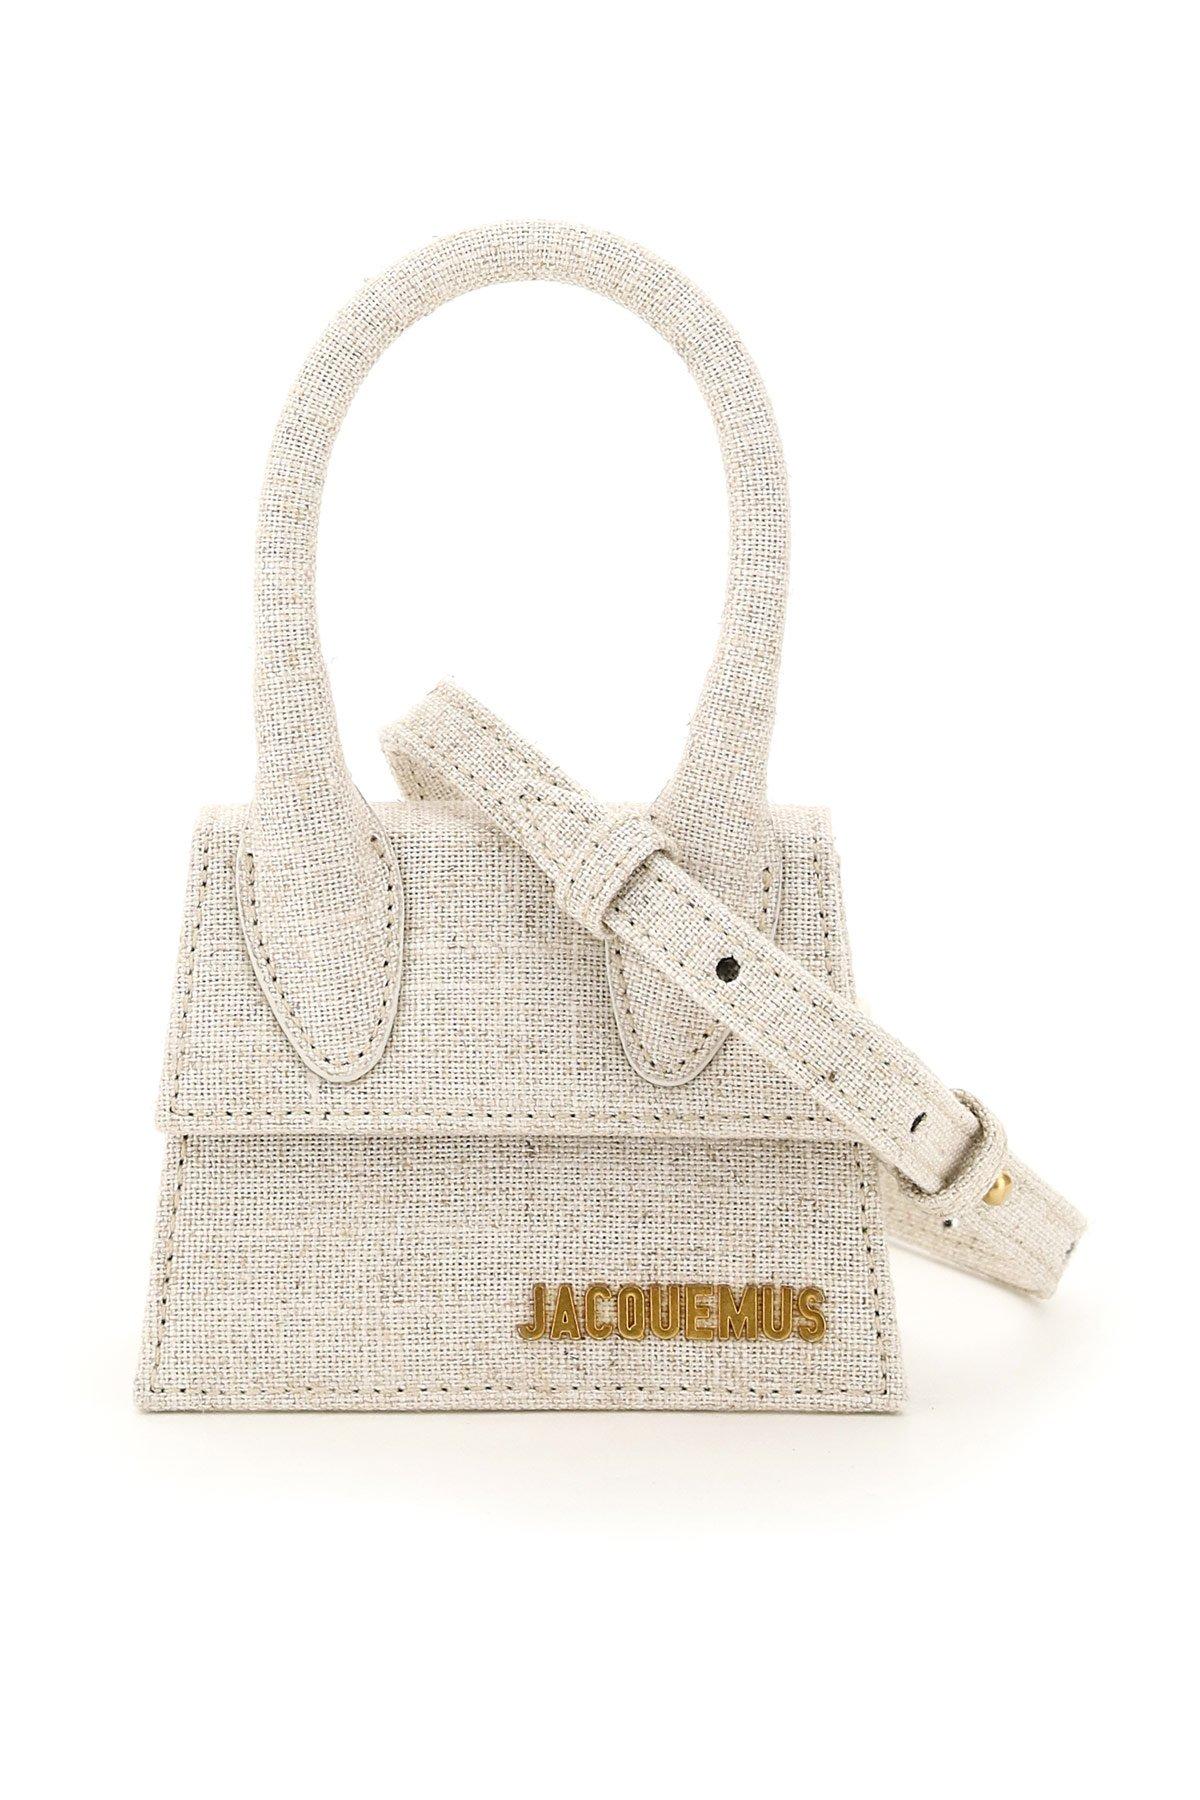 Jacquemus Mini Le Chiquito Leather Bag - Farfetch